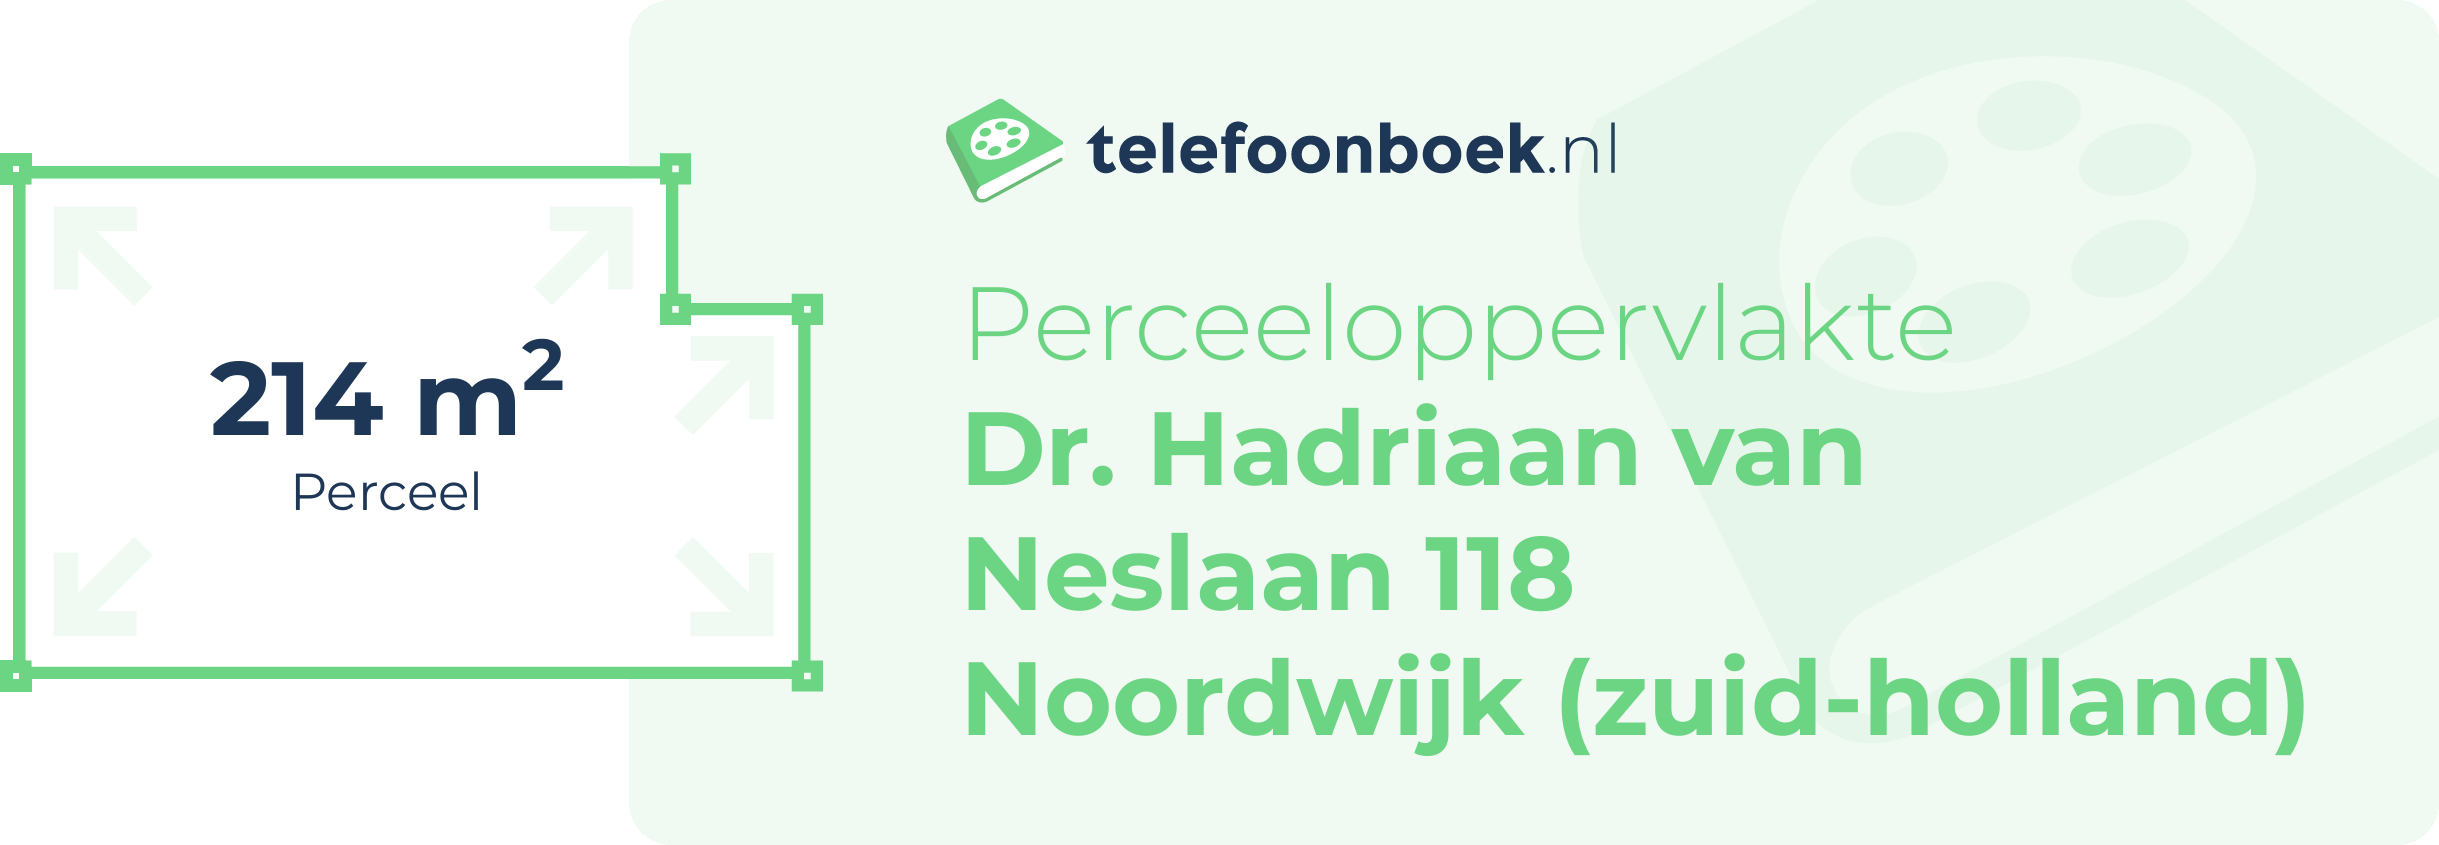 Perceeloppervlakte Dr. Hadriaan Van Neslaan 118 Noordwijk (Zuid-Holland)